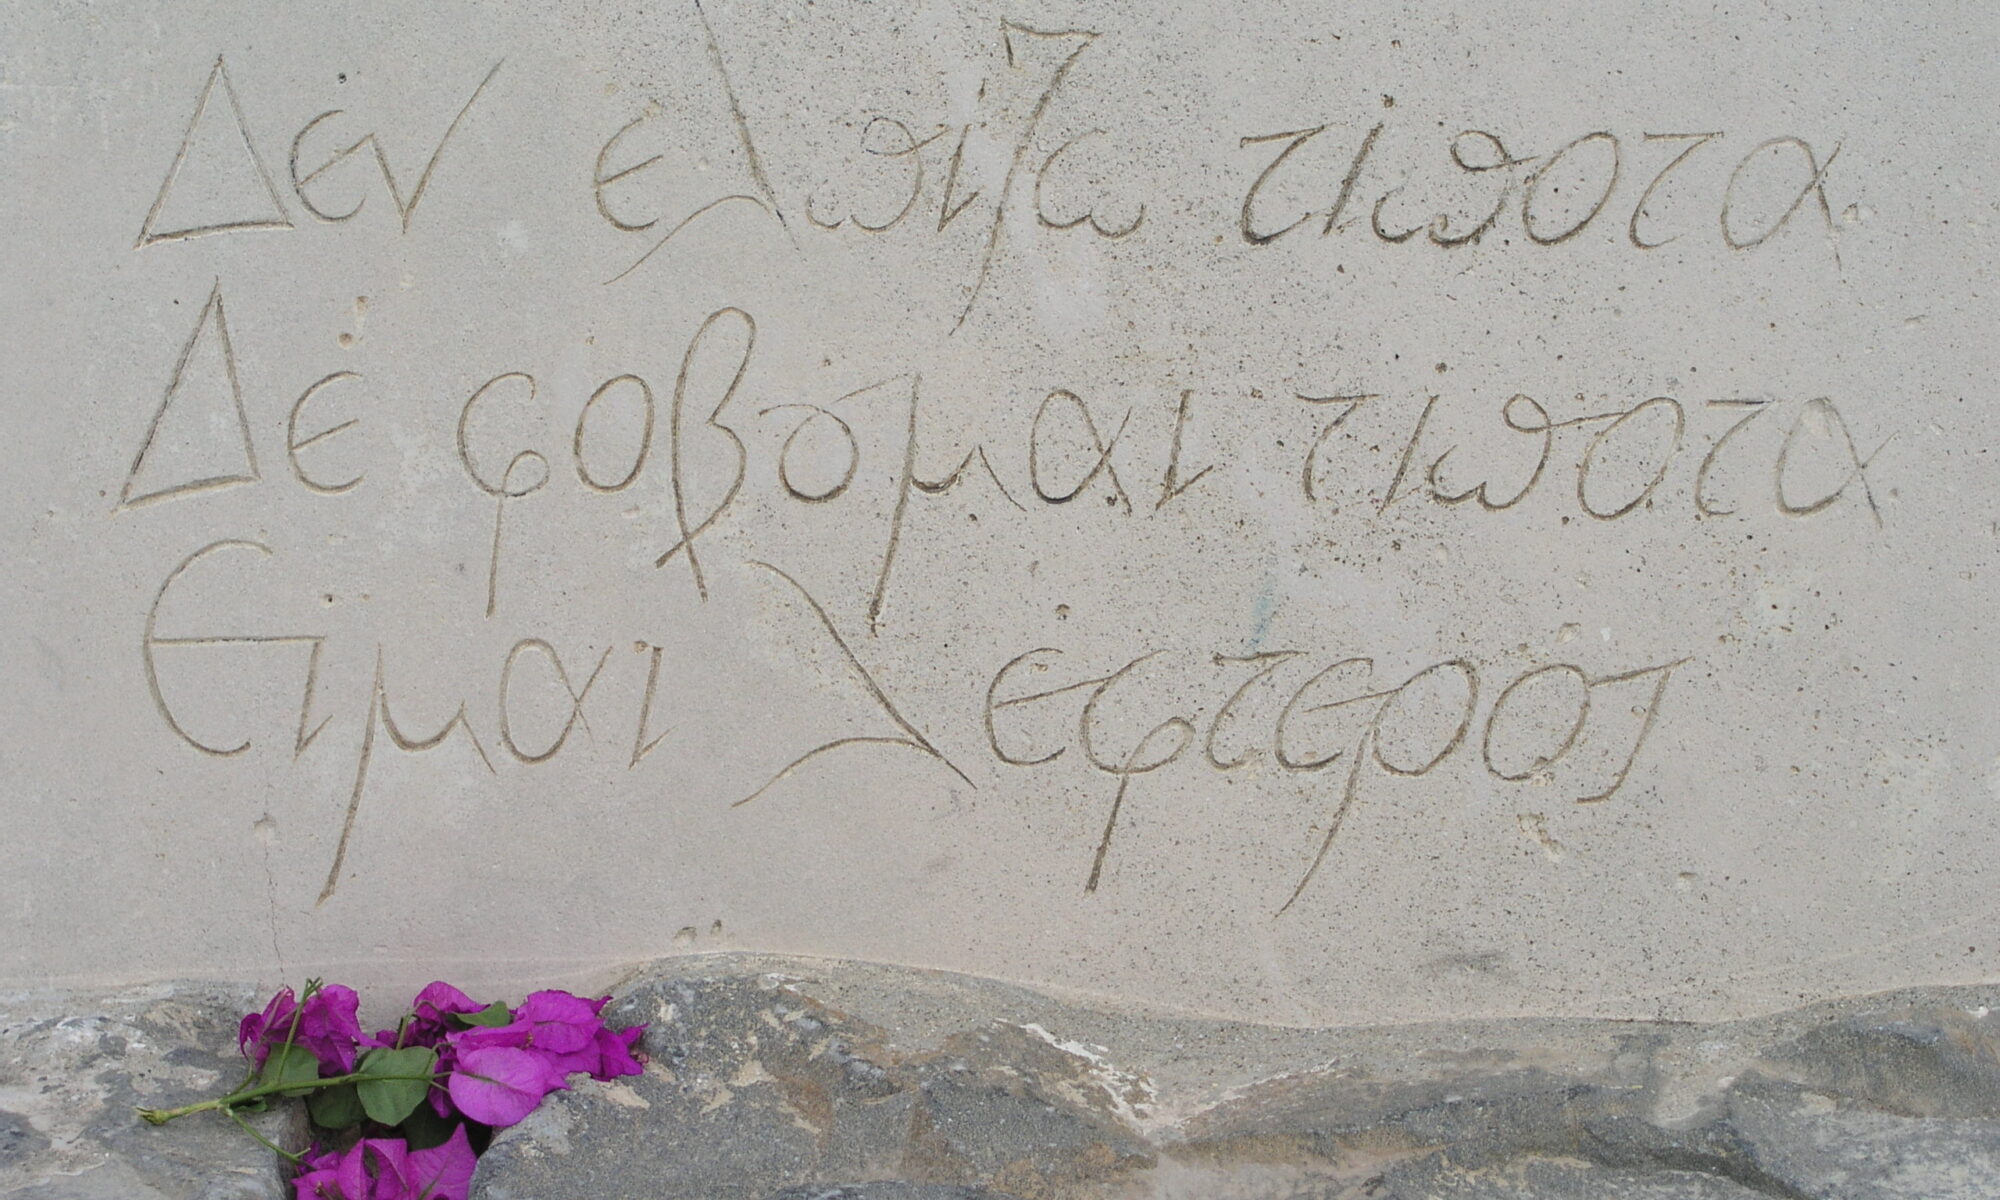 Epitaph on the grave of Kazantzakis in Heraklion. It reads "I hope for nothing. I fear nothing. I am free."